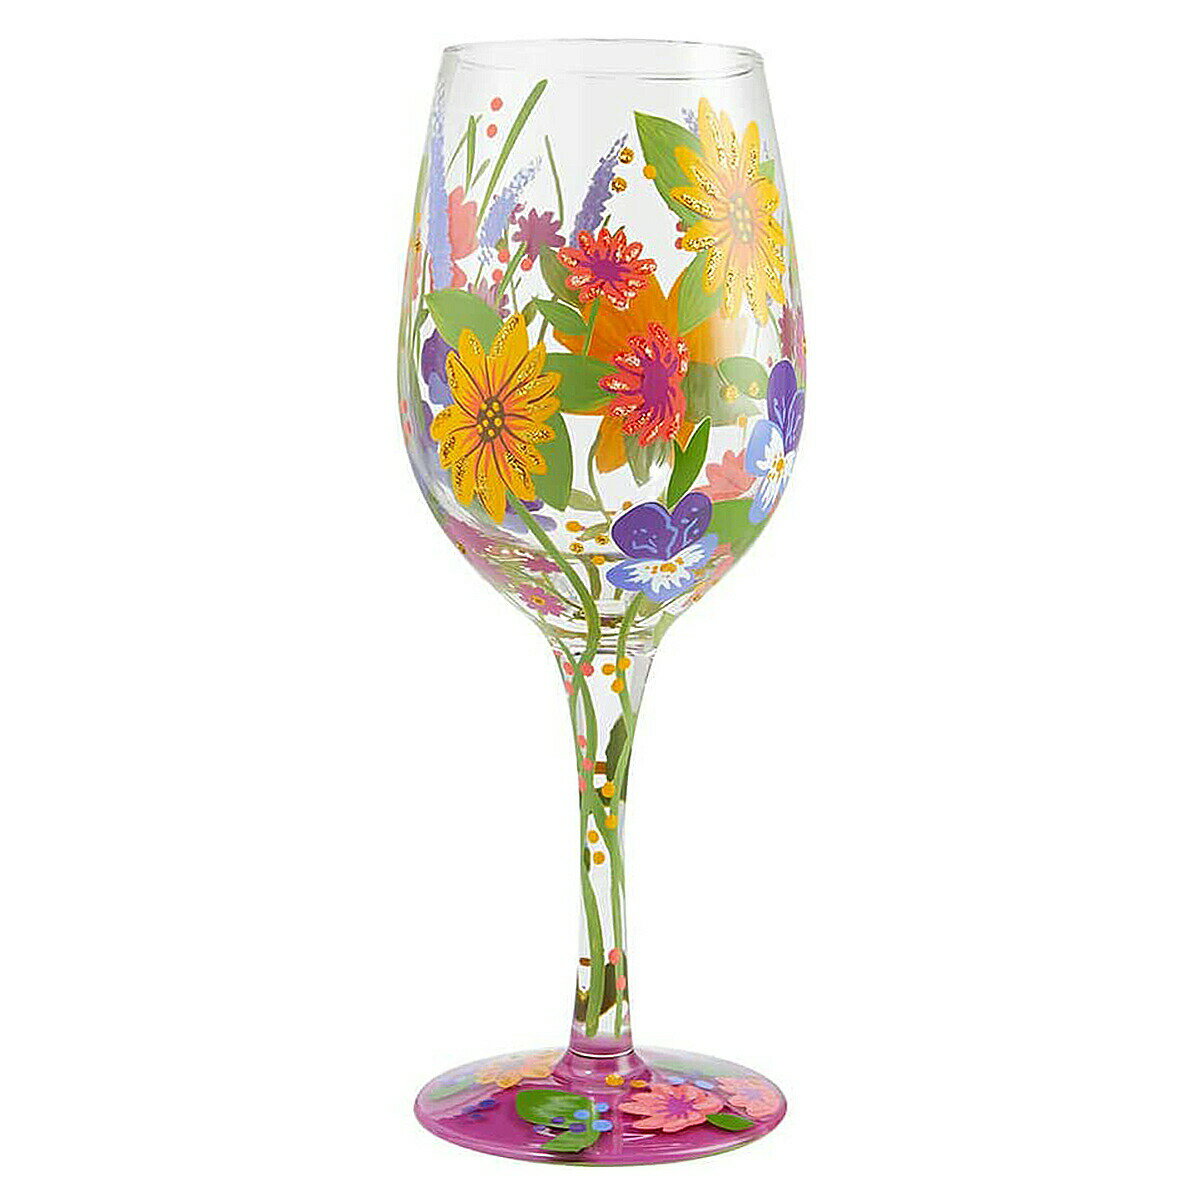 ロリータ LOLITA グラス ワイングラス 6006284 WINE IN THE GARDEN 庭のワイン 花 マルチカラー おしゃれ ブランド 新品